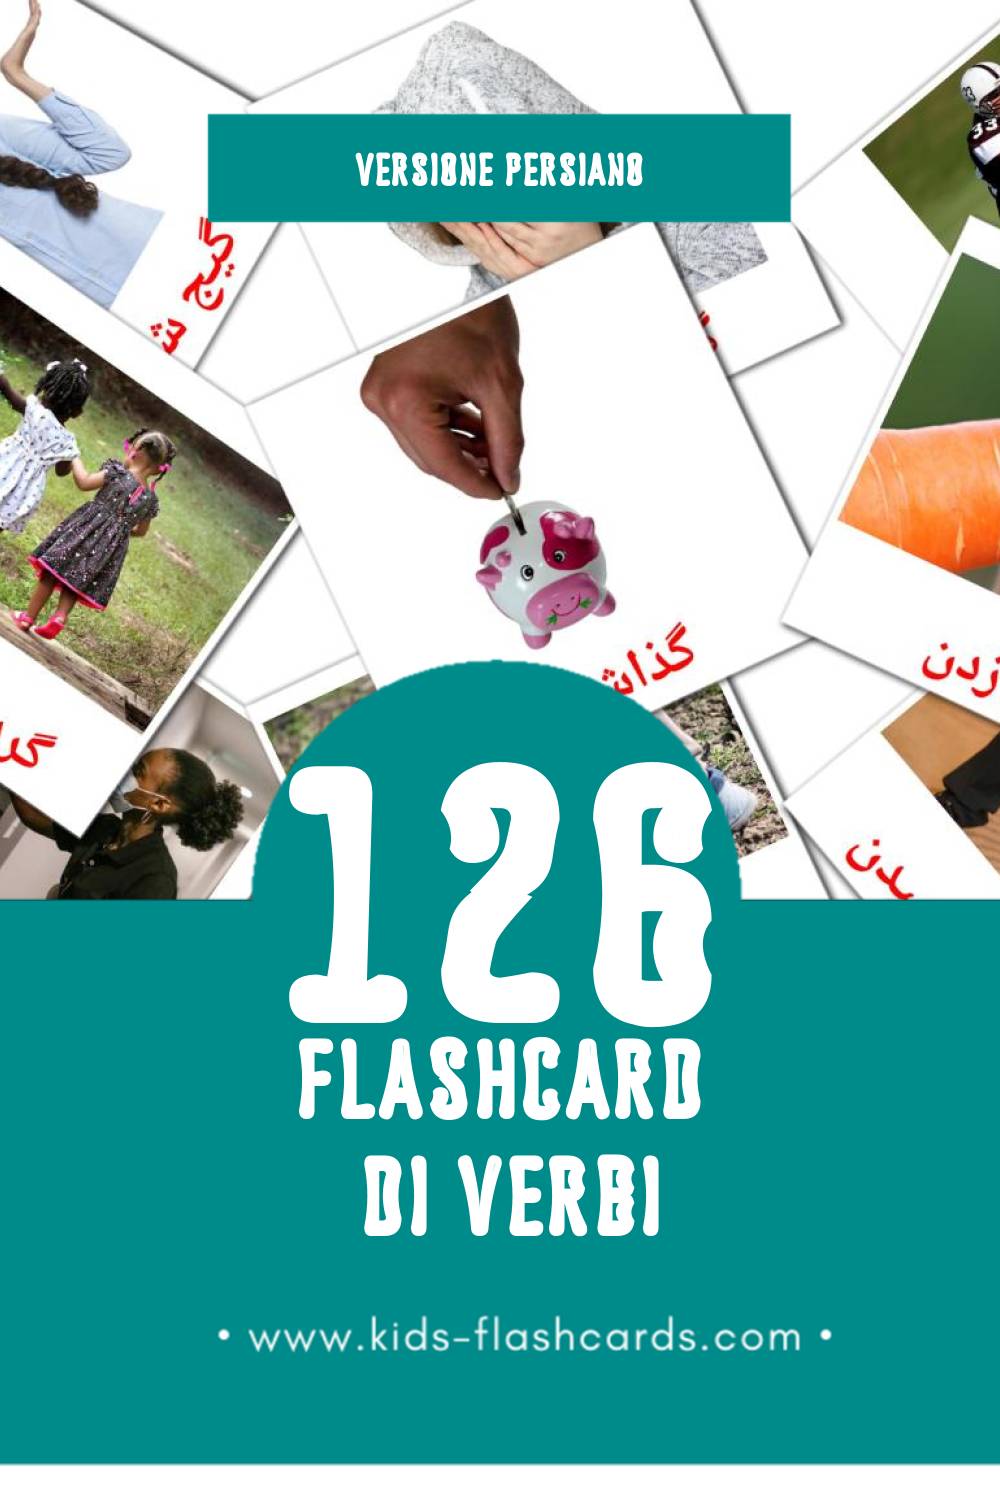 Schede visive sugli افعال per bambini (103 schede in Persiano)